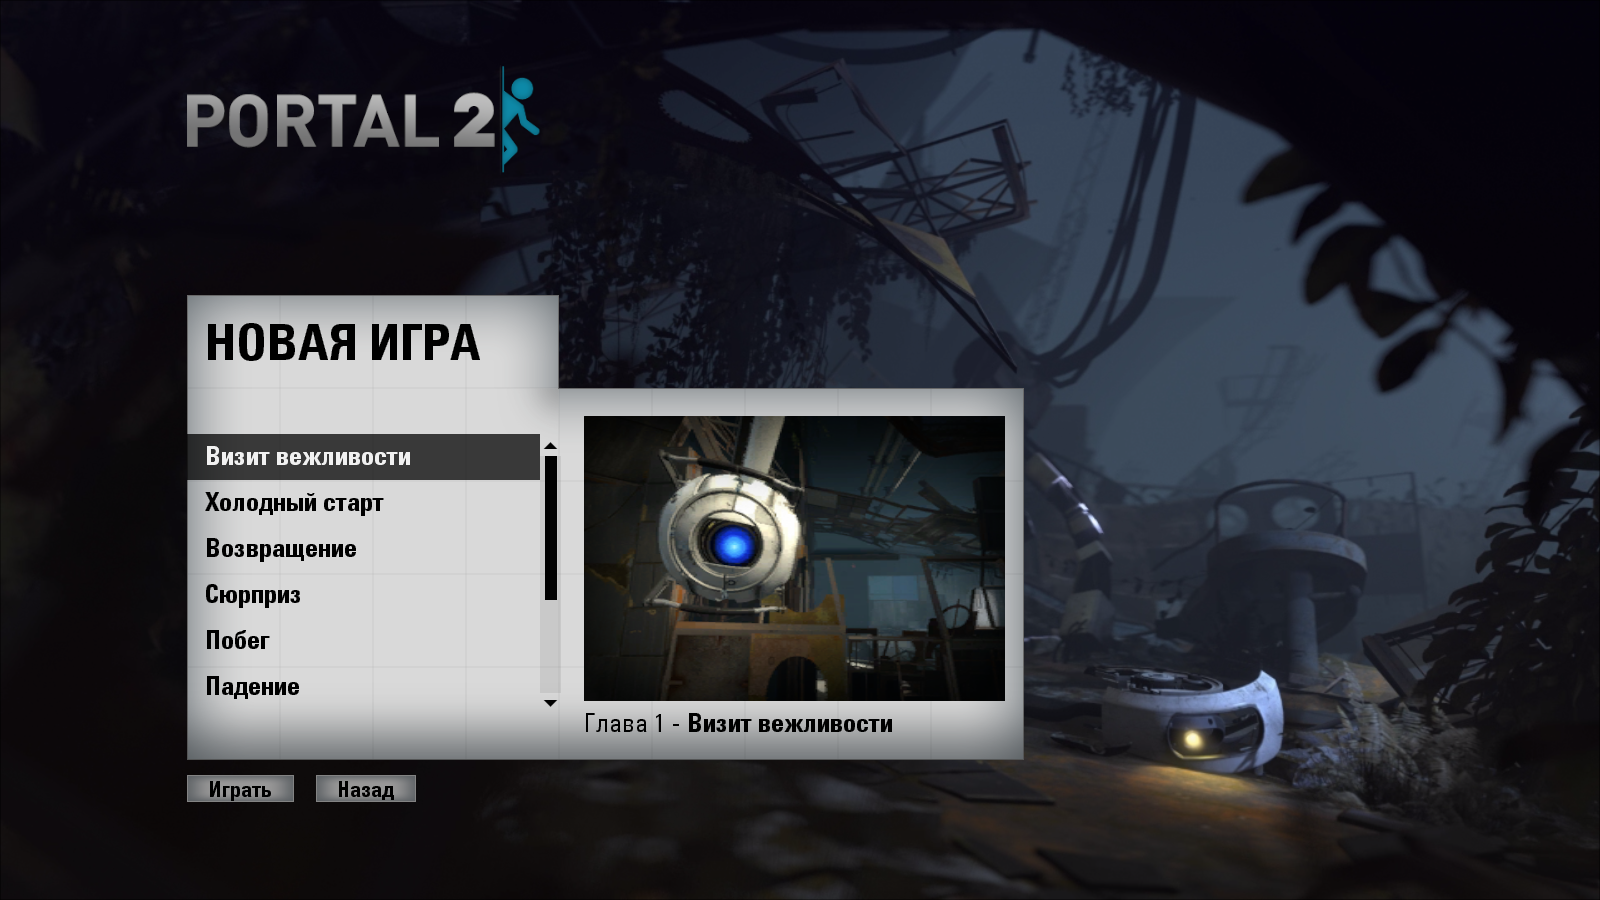 Portal 2 no menu фото 7